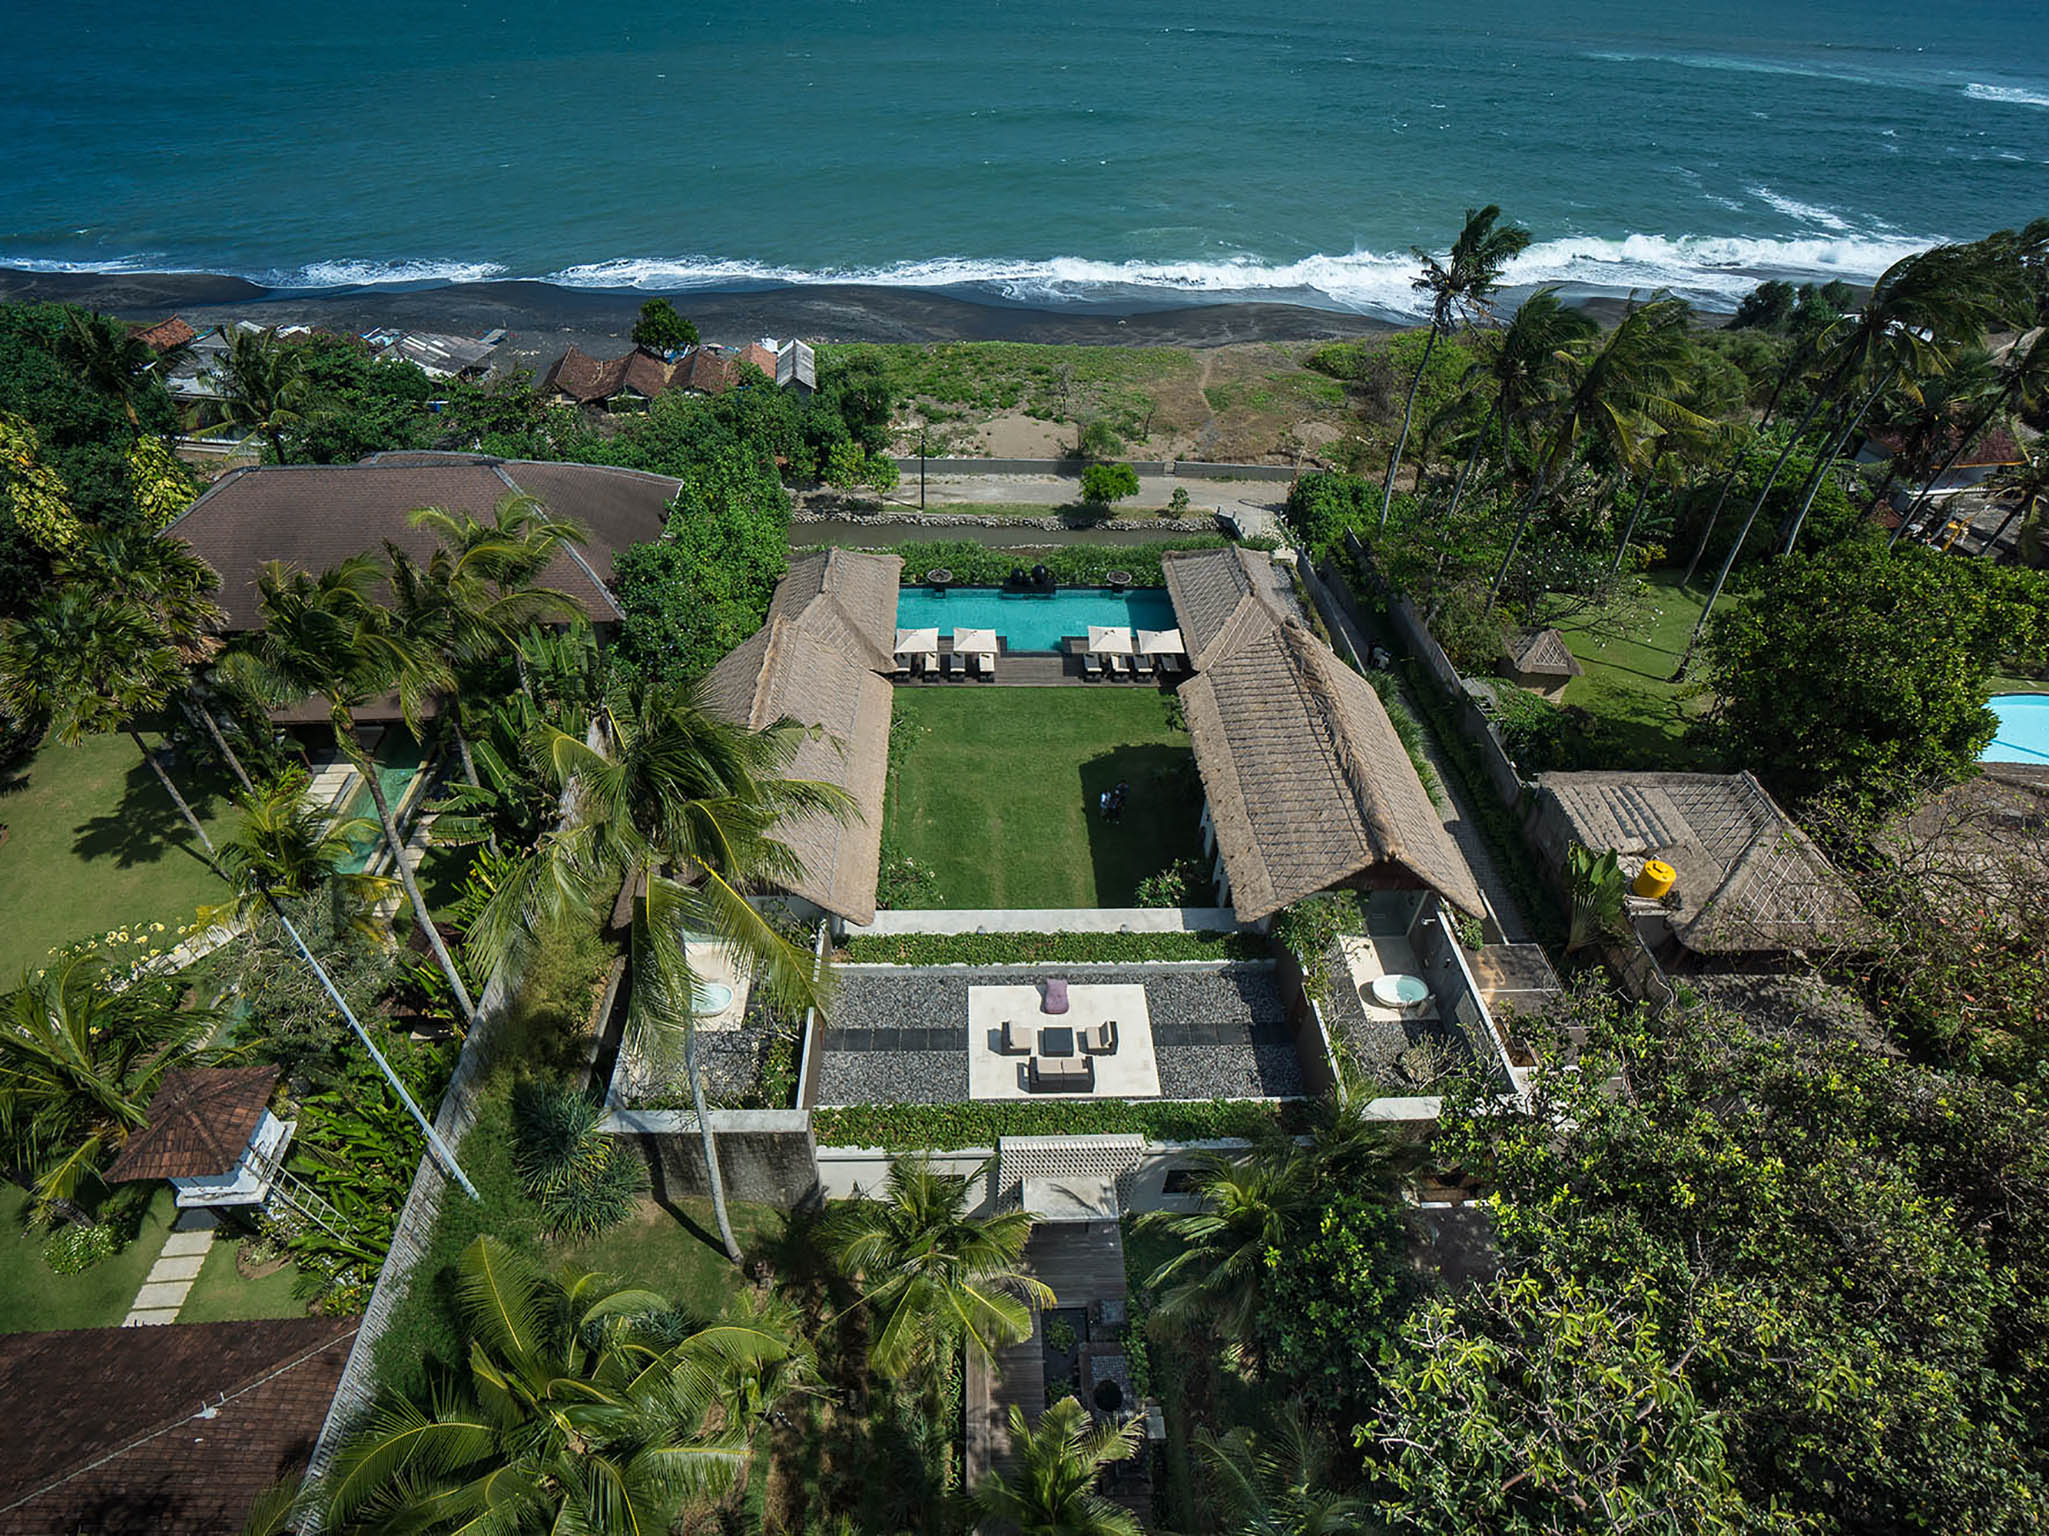 Seseh Beach Villa I - The villa and sea view - Seseh Beach Villa I, Seseh-Tanah Lot, Bali